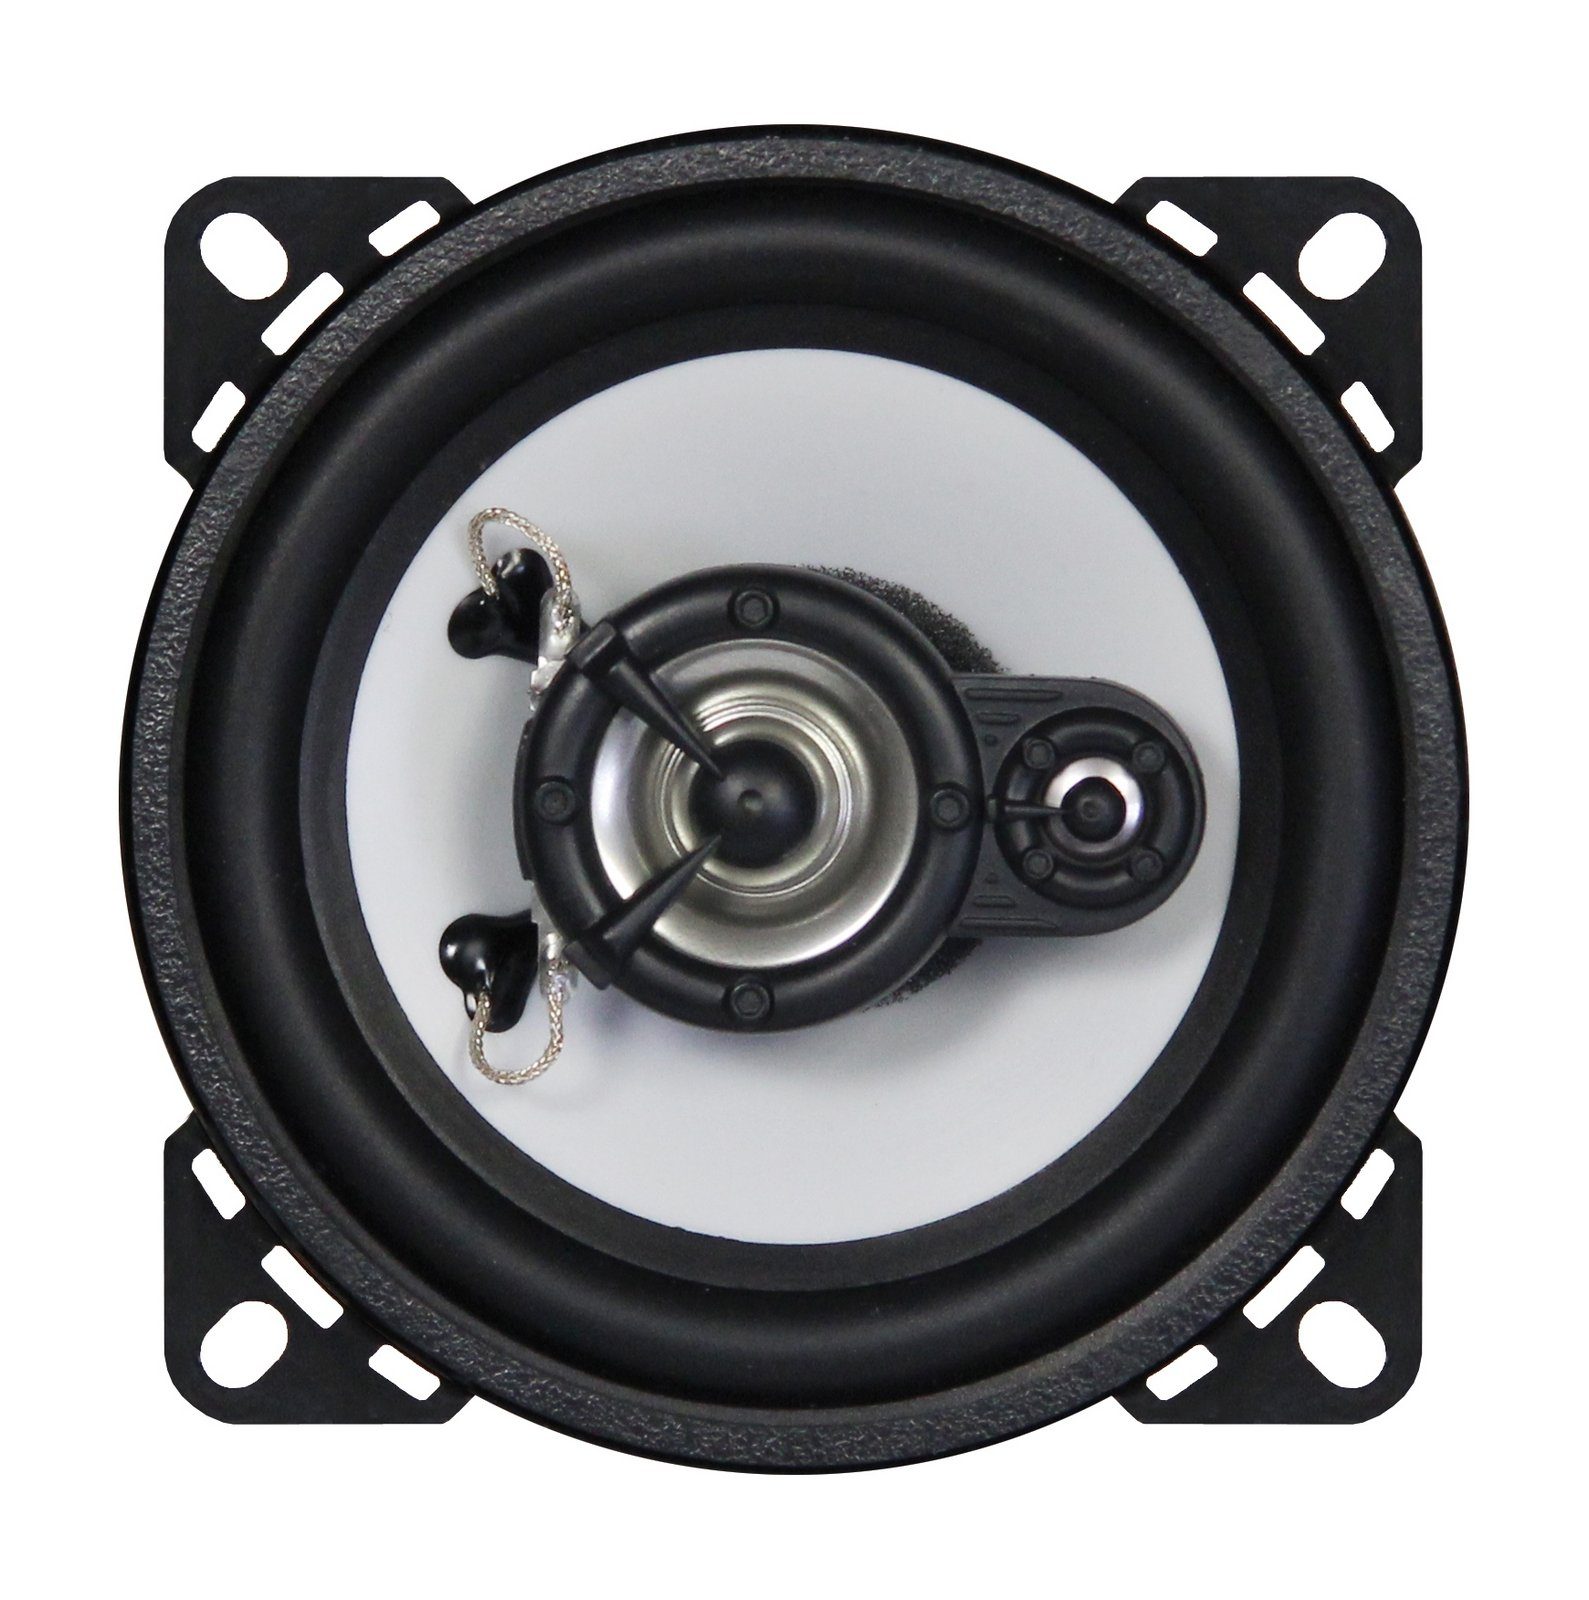 2-Wege Auto-Lautsprecher GTI-42 10cm Crunch Koaxial